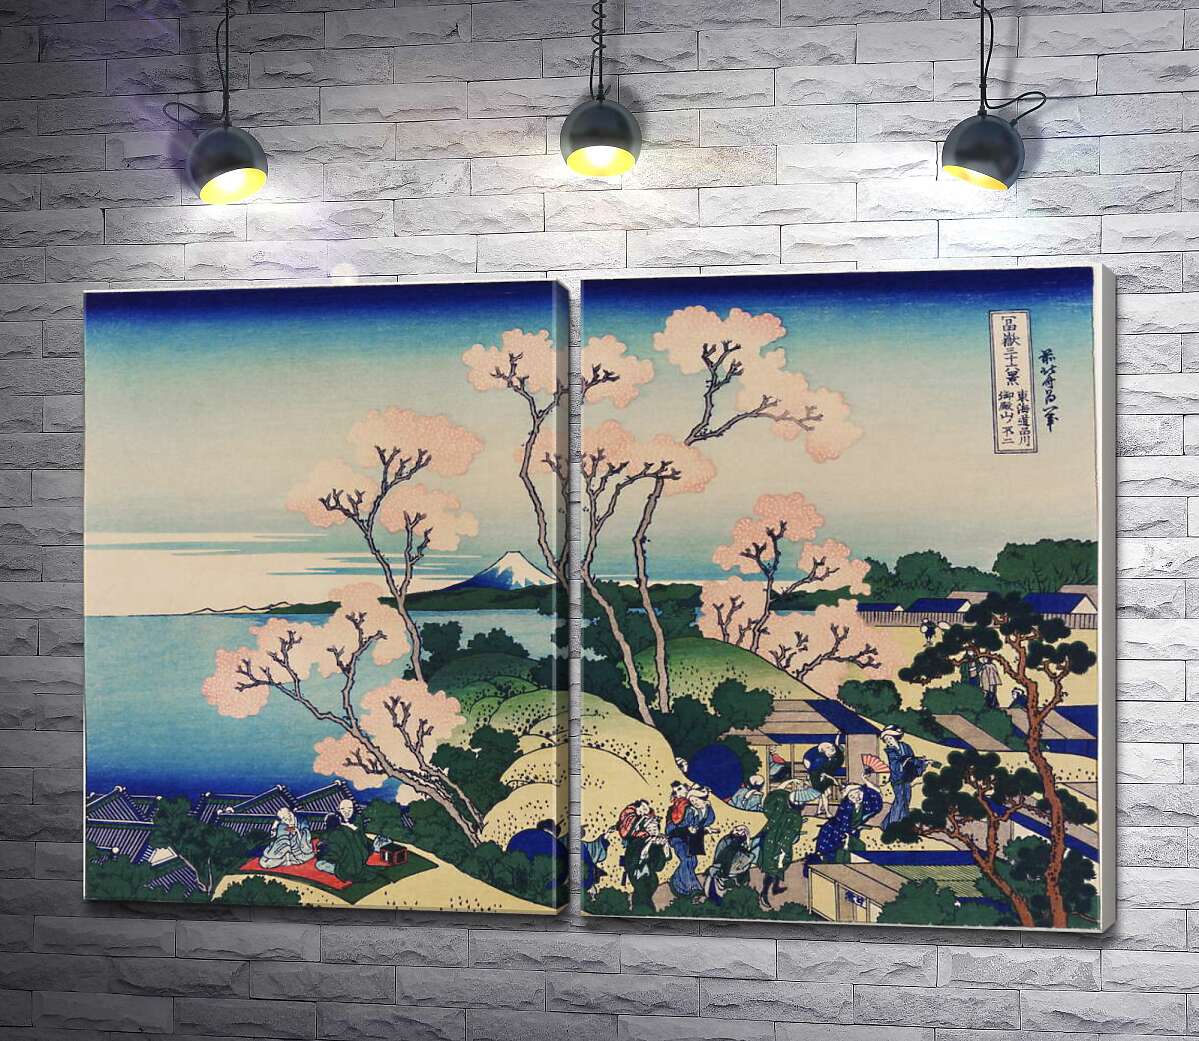 модульная картина "Вид на Фудзи с горы Готэнъяма у реки Синагава (Goten-yama hill, Shinagawa on the Tokaido) - Кацусика Хокусай (Katsushika Hokusai)"